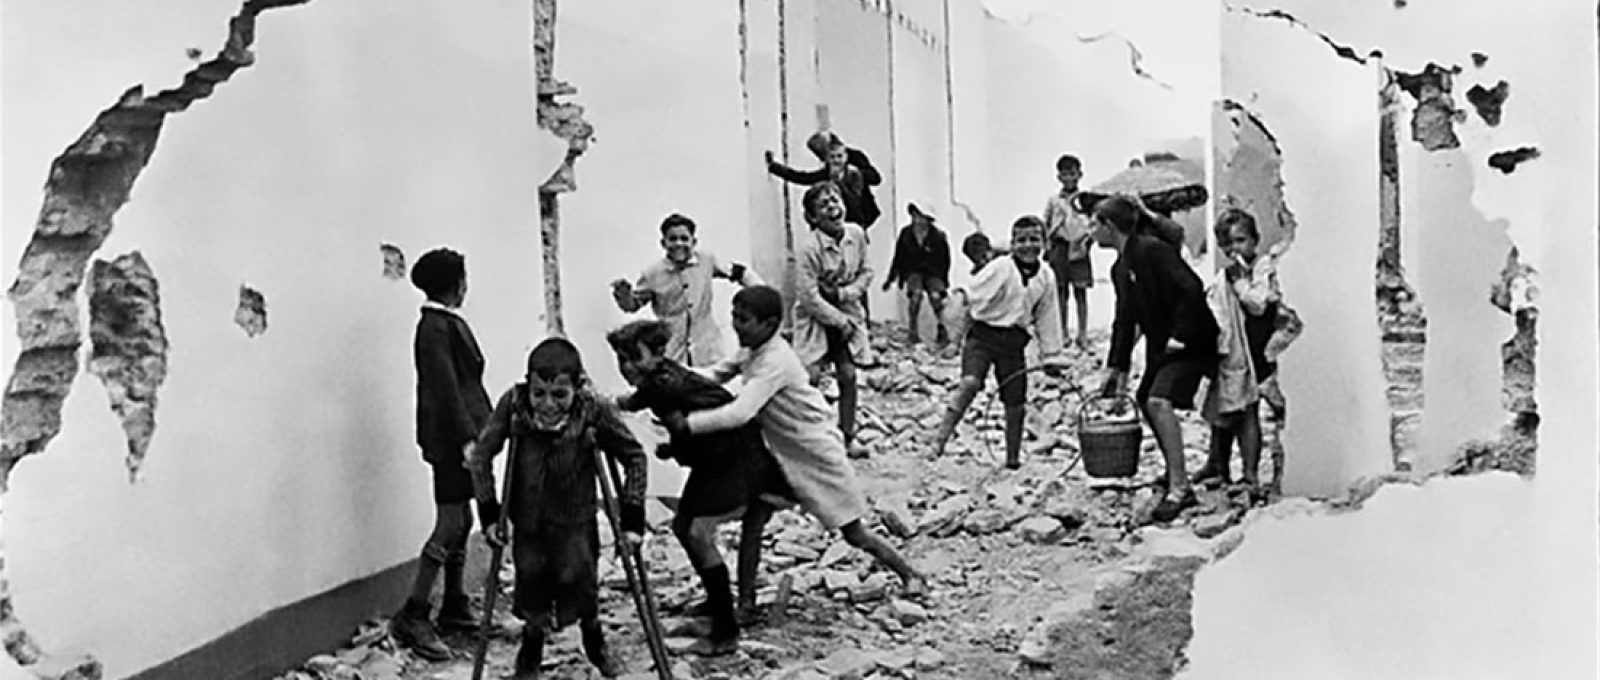 “Um grupo de crianças brinca entre os escombros. Sevilha, Espanha, 1933.” (Henri Cartier-Bresson/Magnum).